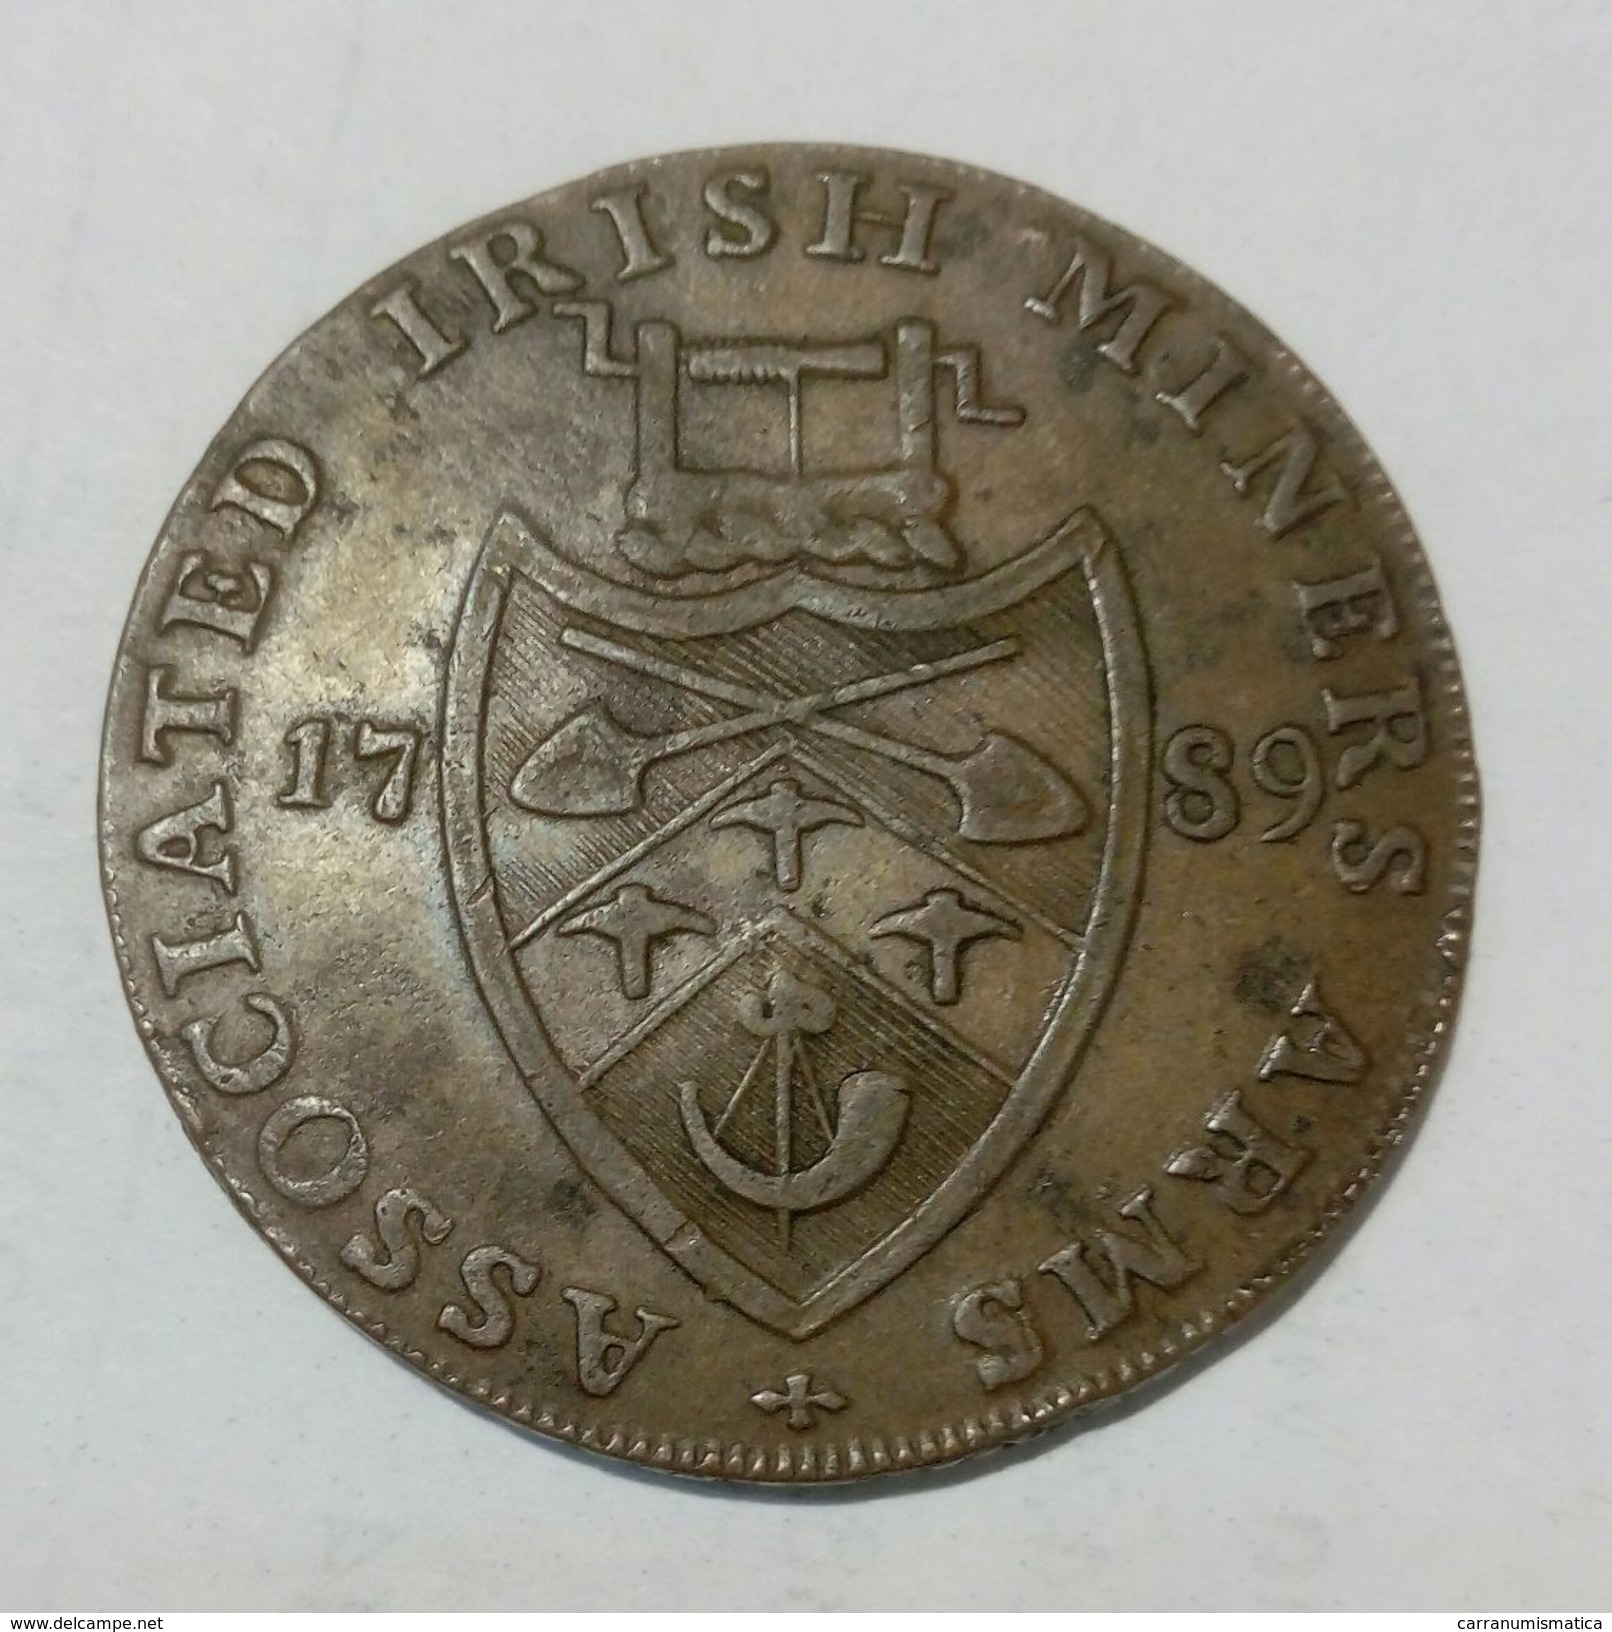 IRELAND - ASSOCIATED IRISH MINES Co. - Half Penny Token (1789) - Monedas/ De Necesidad